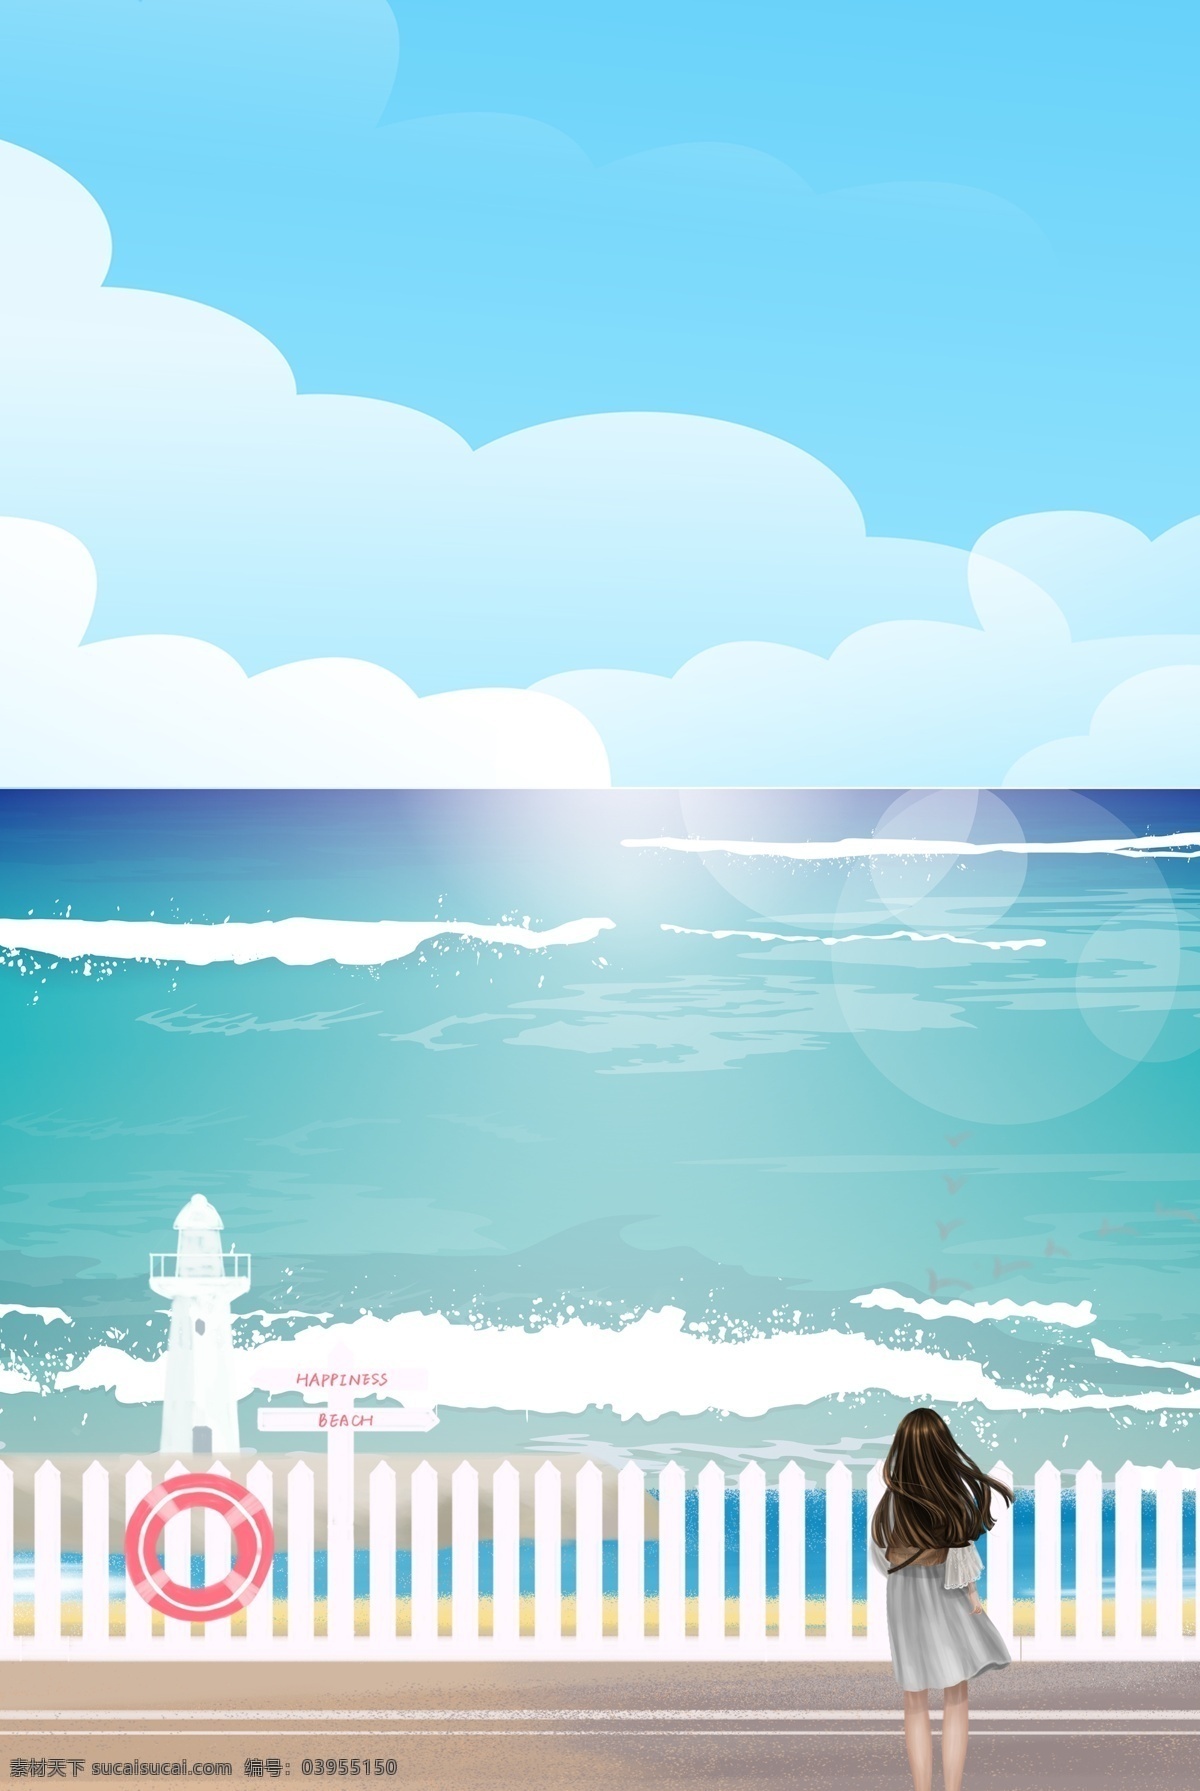 创意 海景 自然风光 合成 背景 自然风景 风景 海边 围栏 女孩 卡通